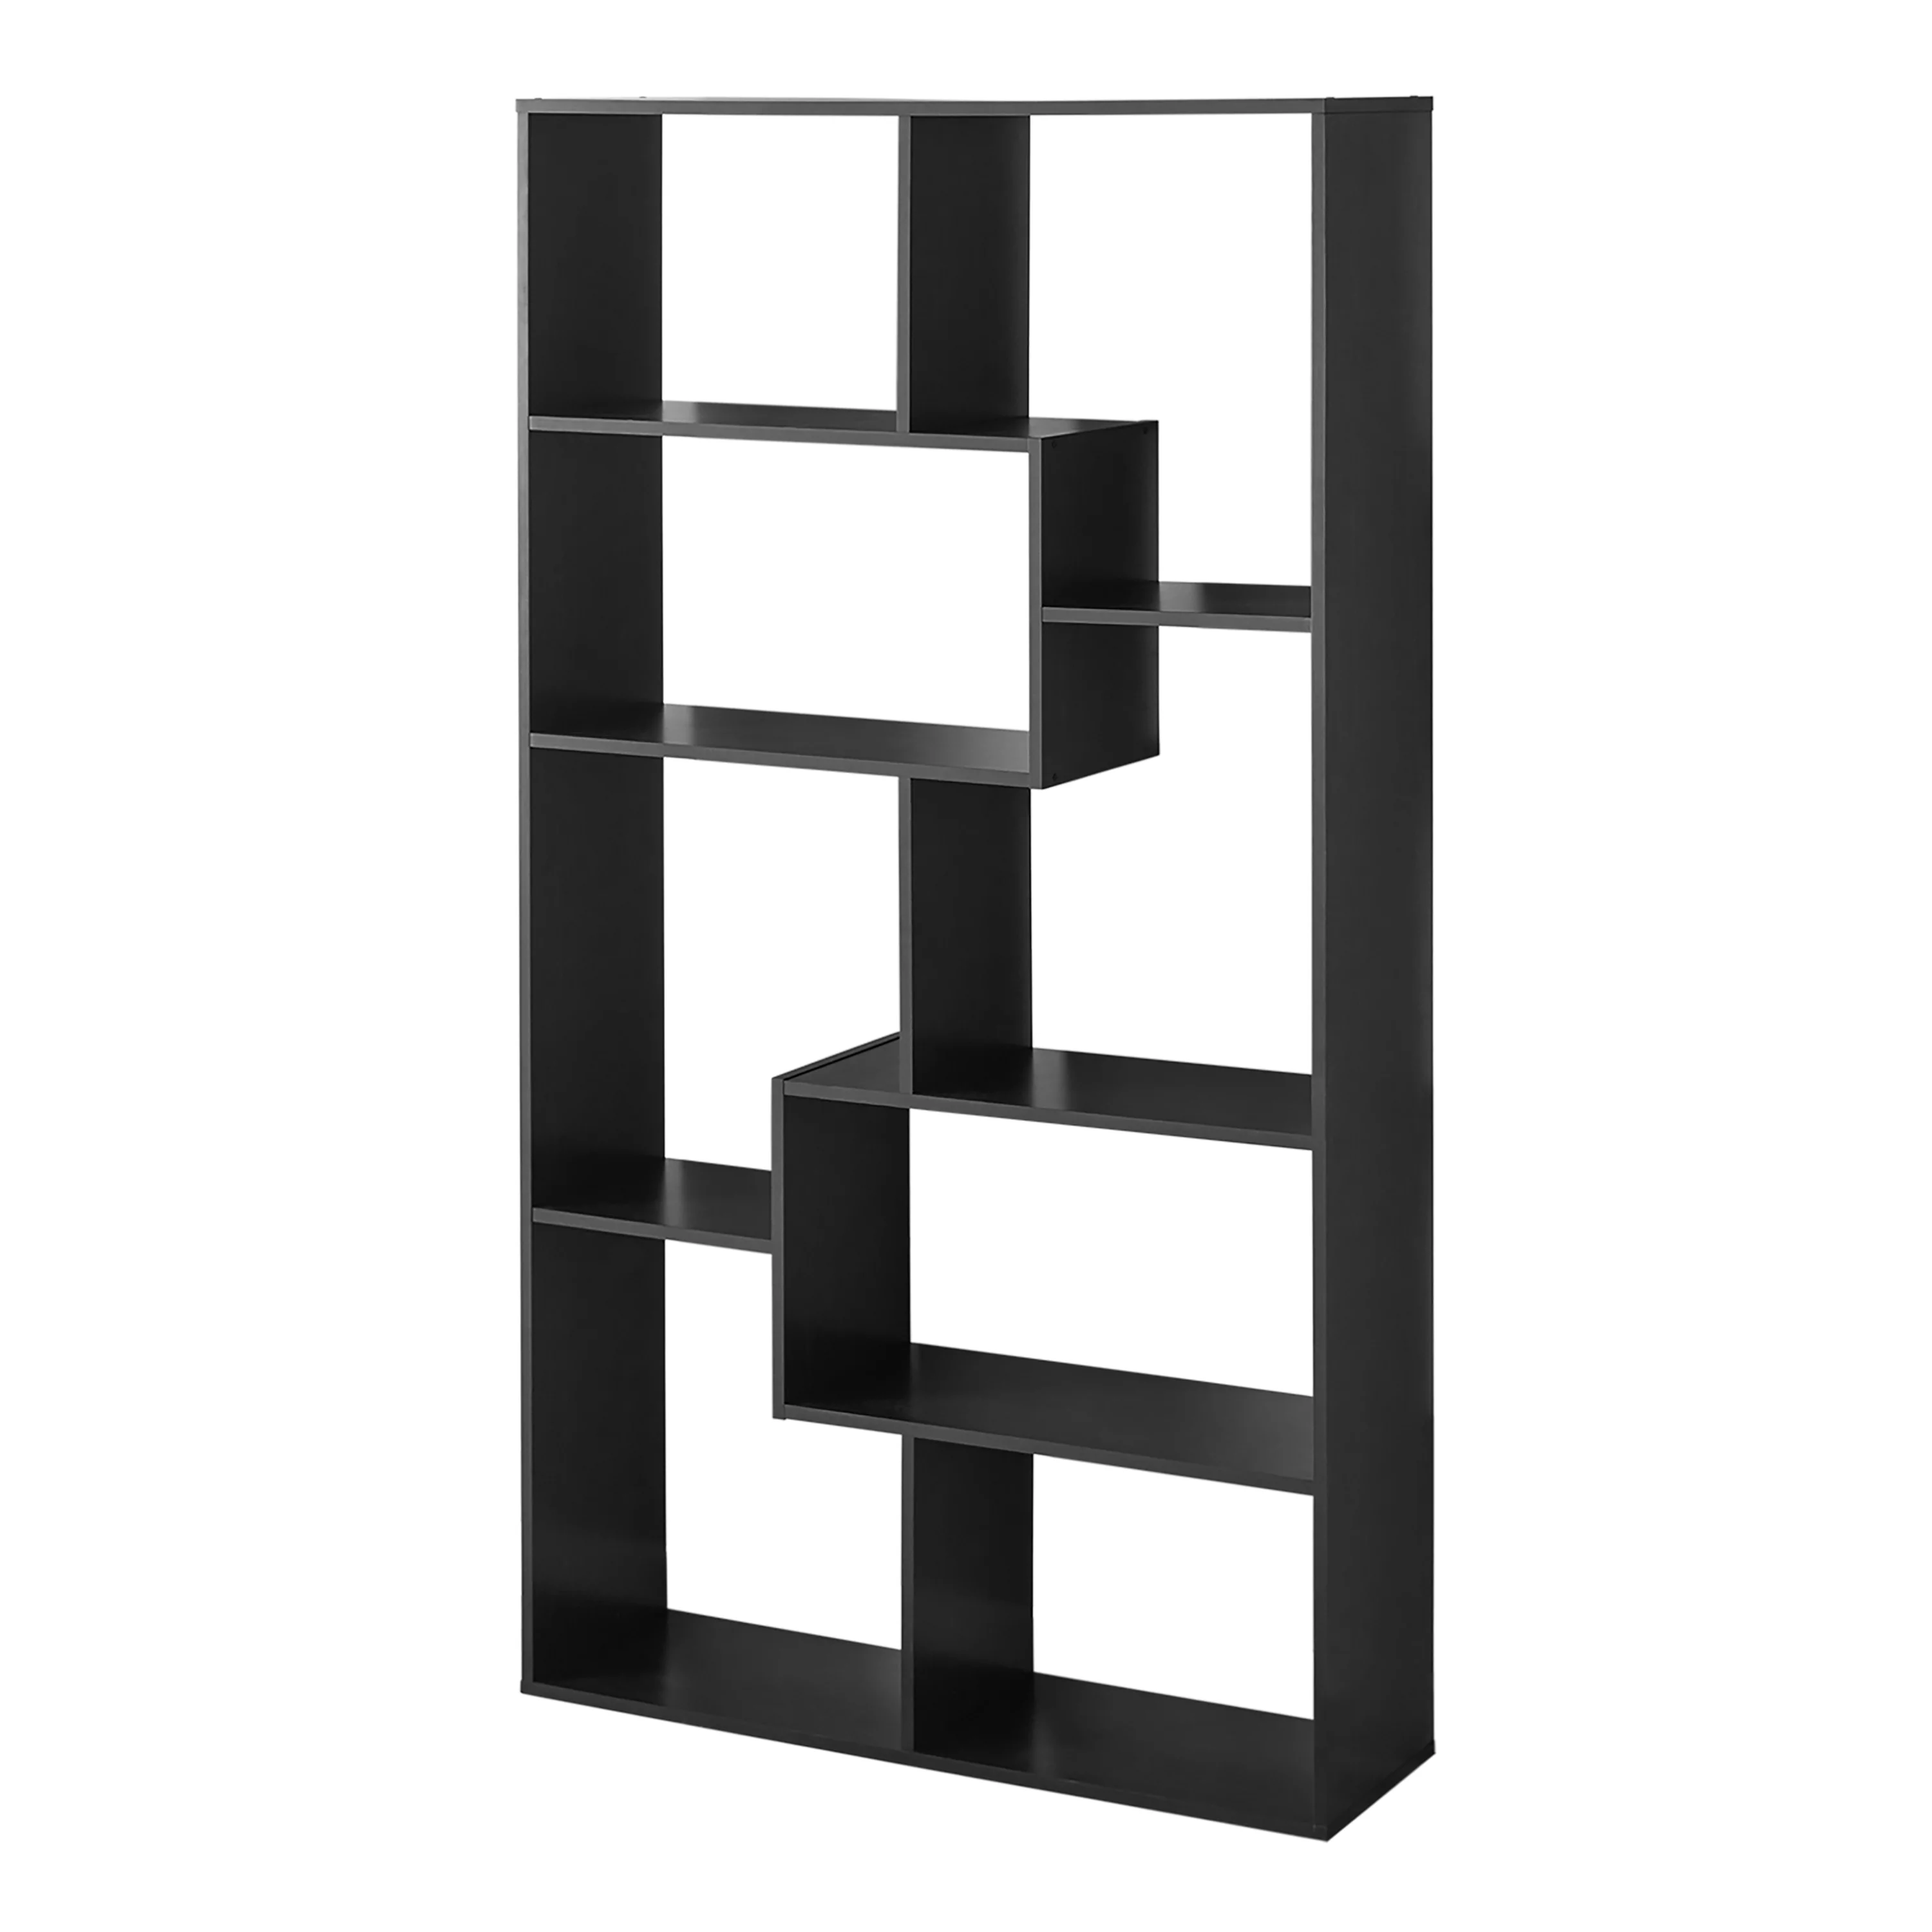 Mainstays 8 Cube Bookcase, White or Espresso